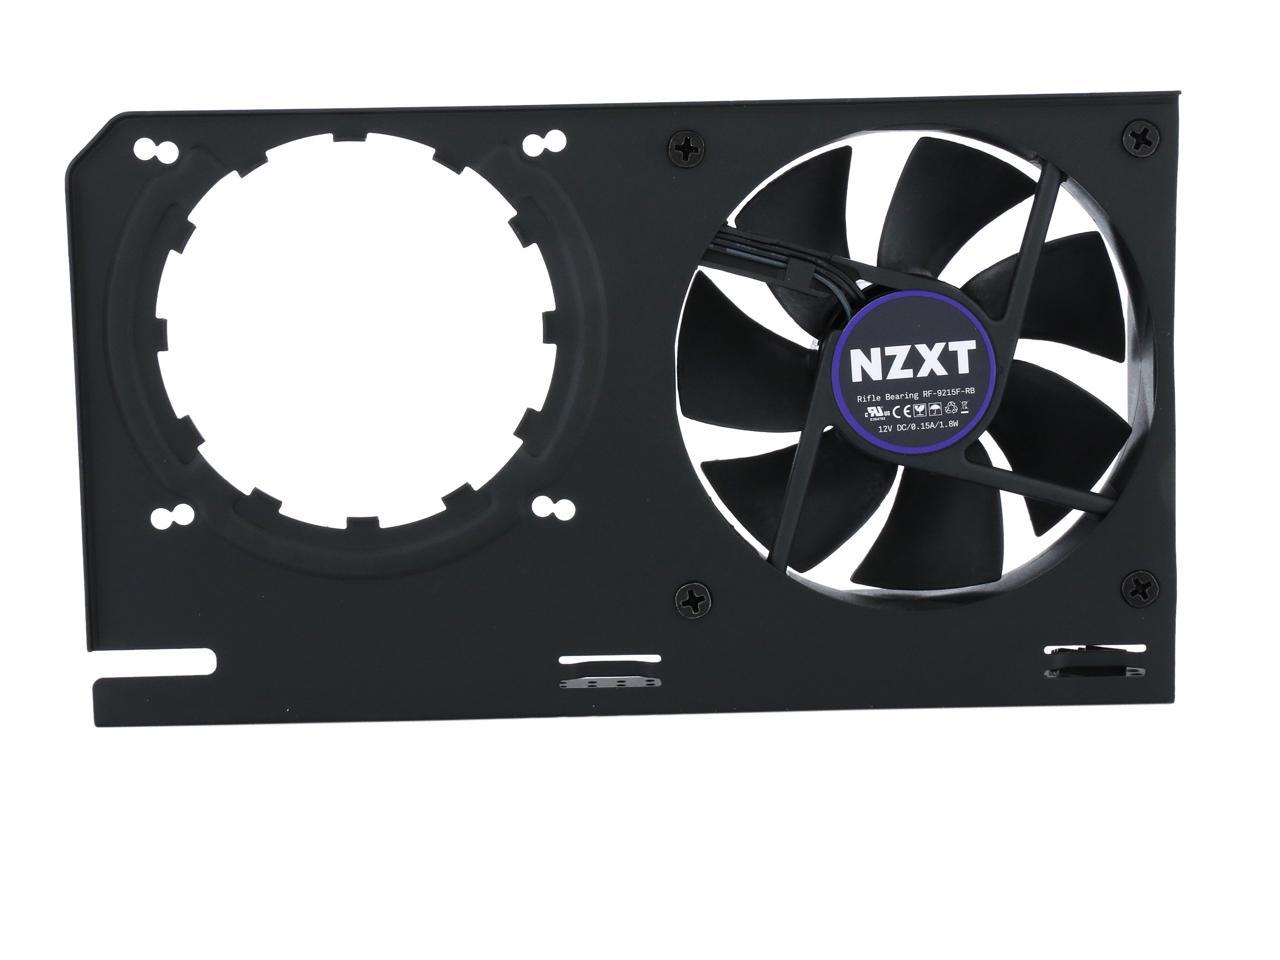 Noir Compatibilité GPU AMD et NVIDIA Kraken G12 Kit de Montage GPU pour Kraken X Series AIO Refroidissement GPU amélioré Noir NZXT Kraken G12